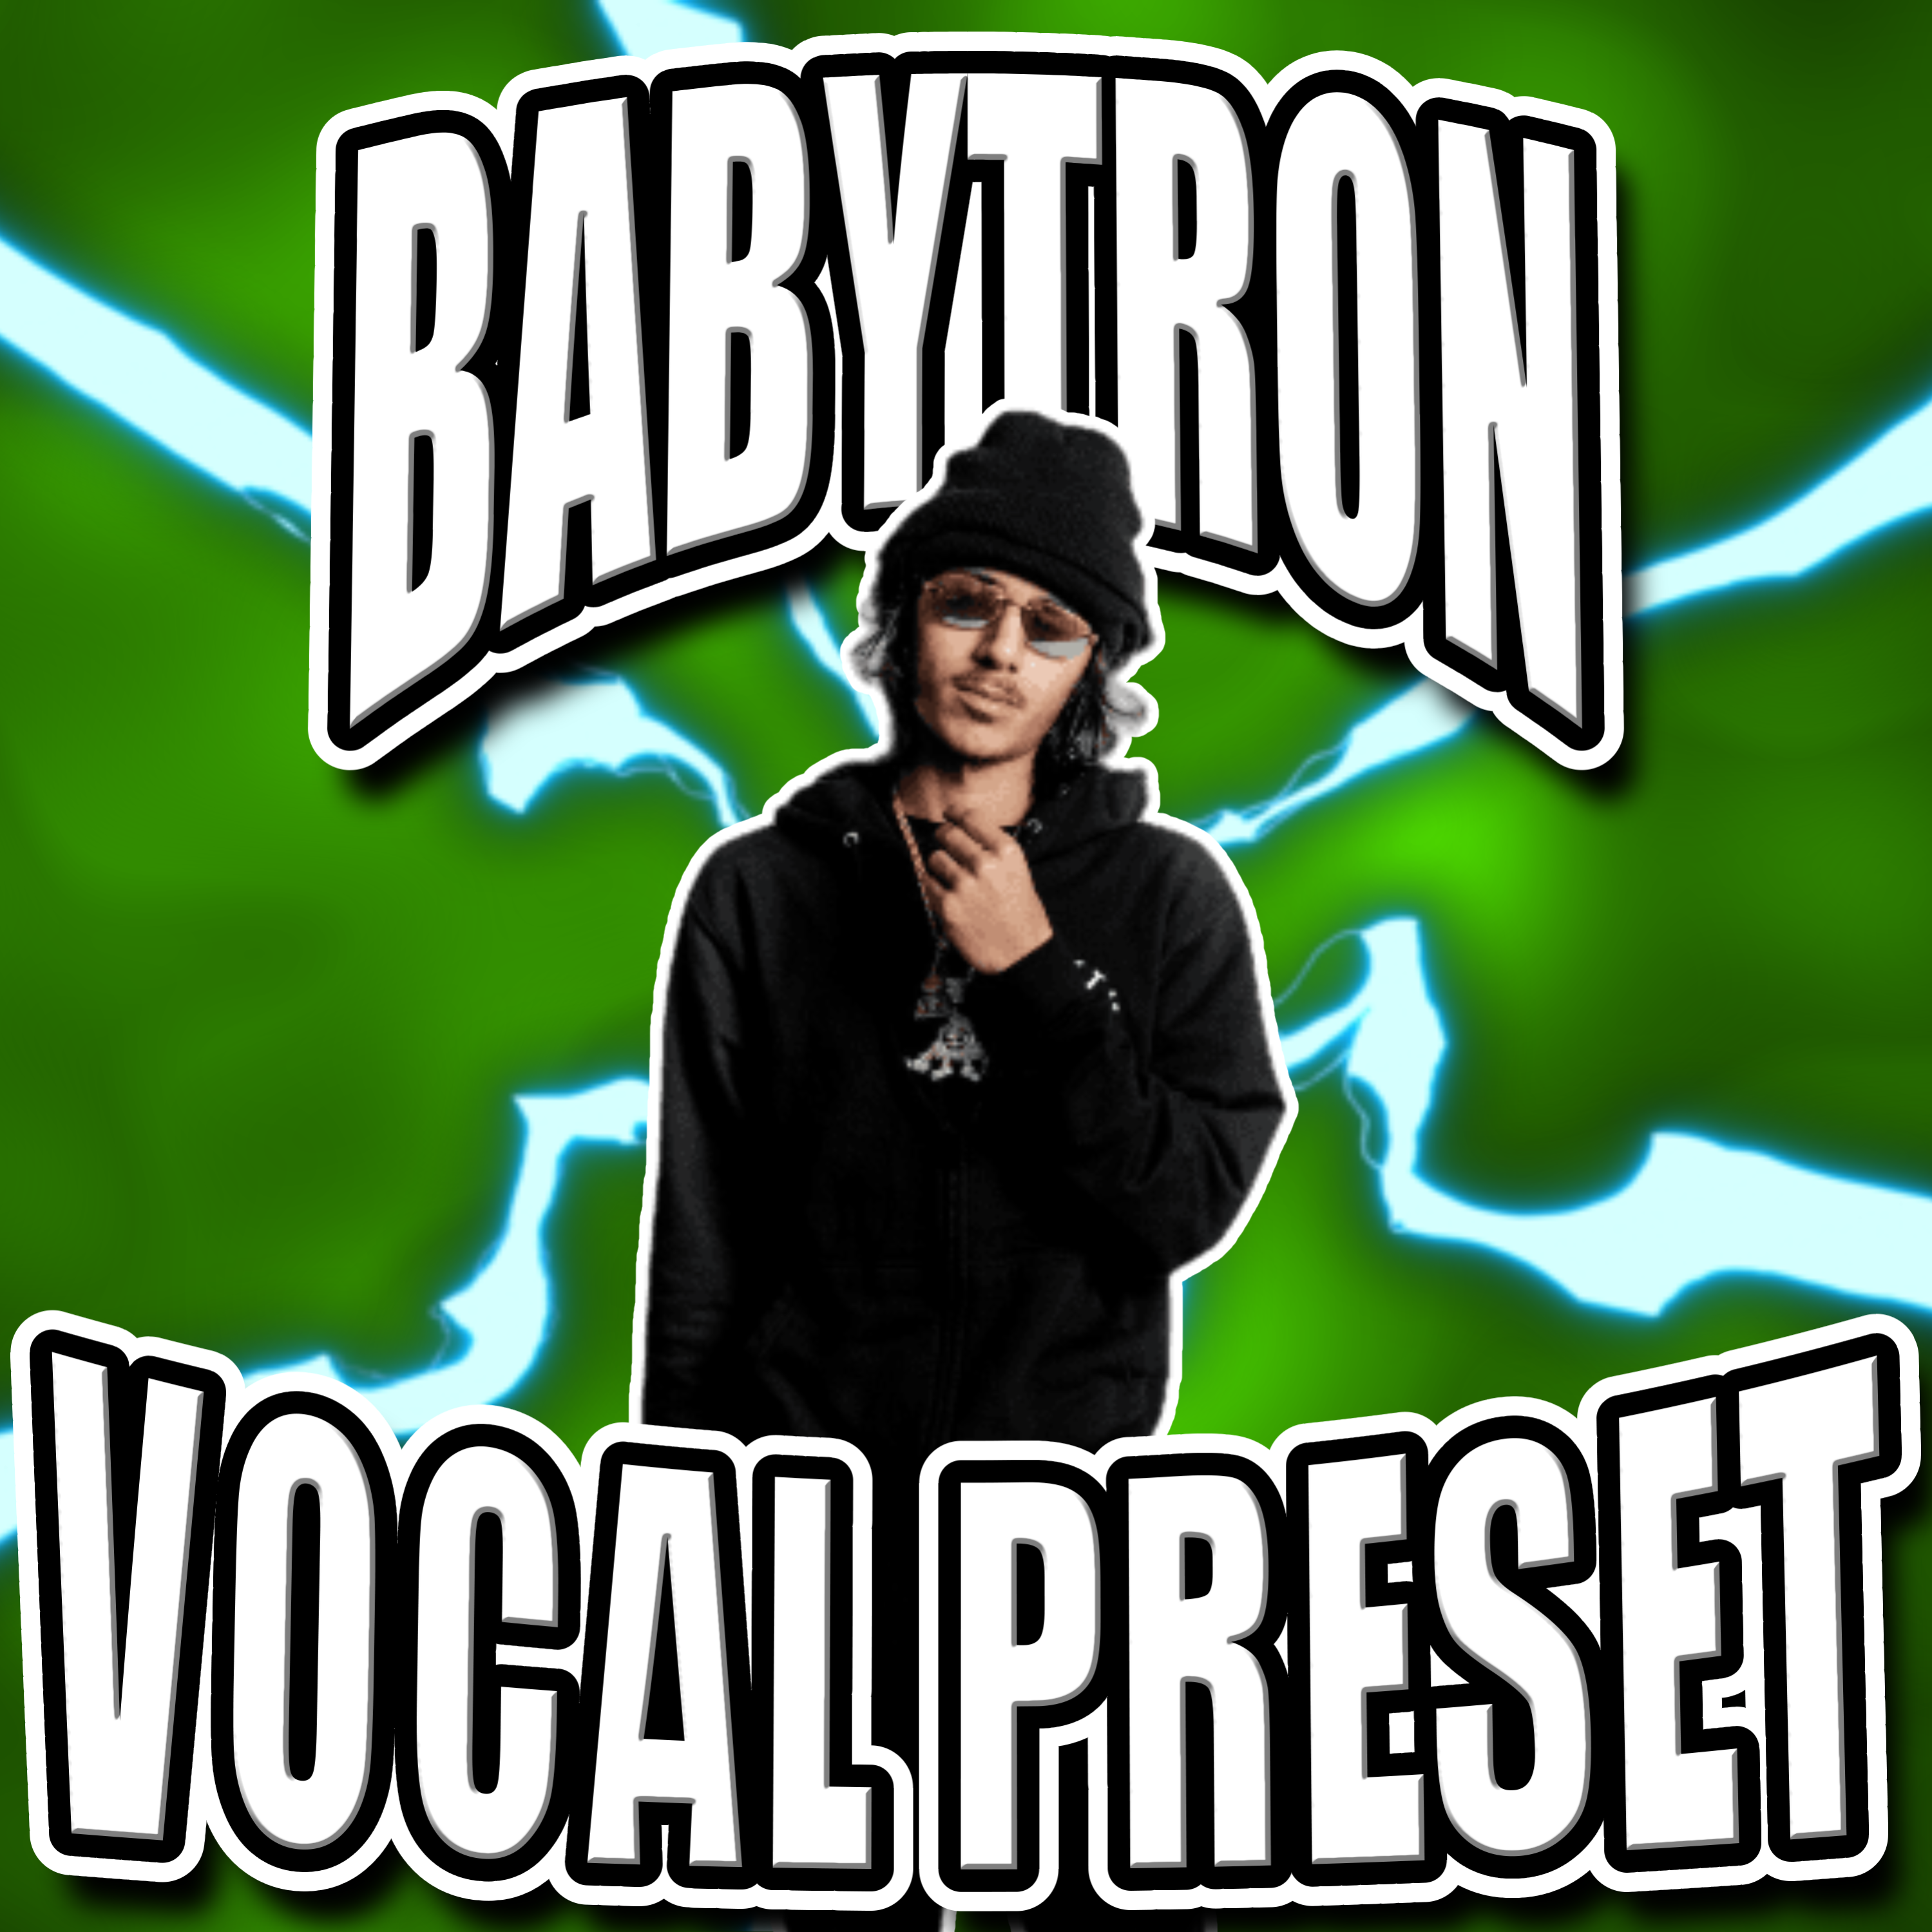 Babytron Vocal Preset